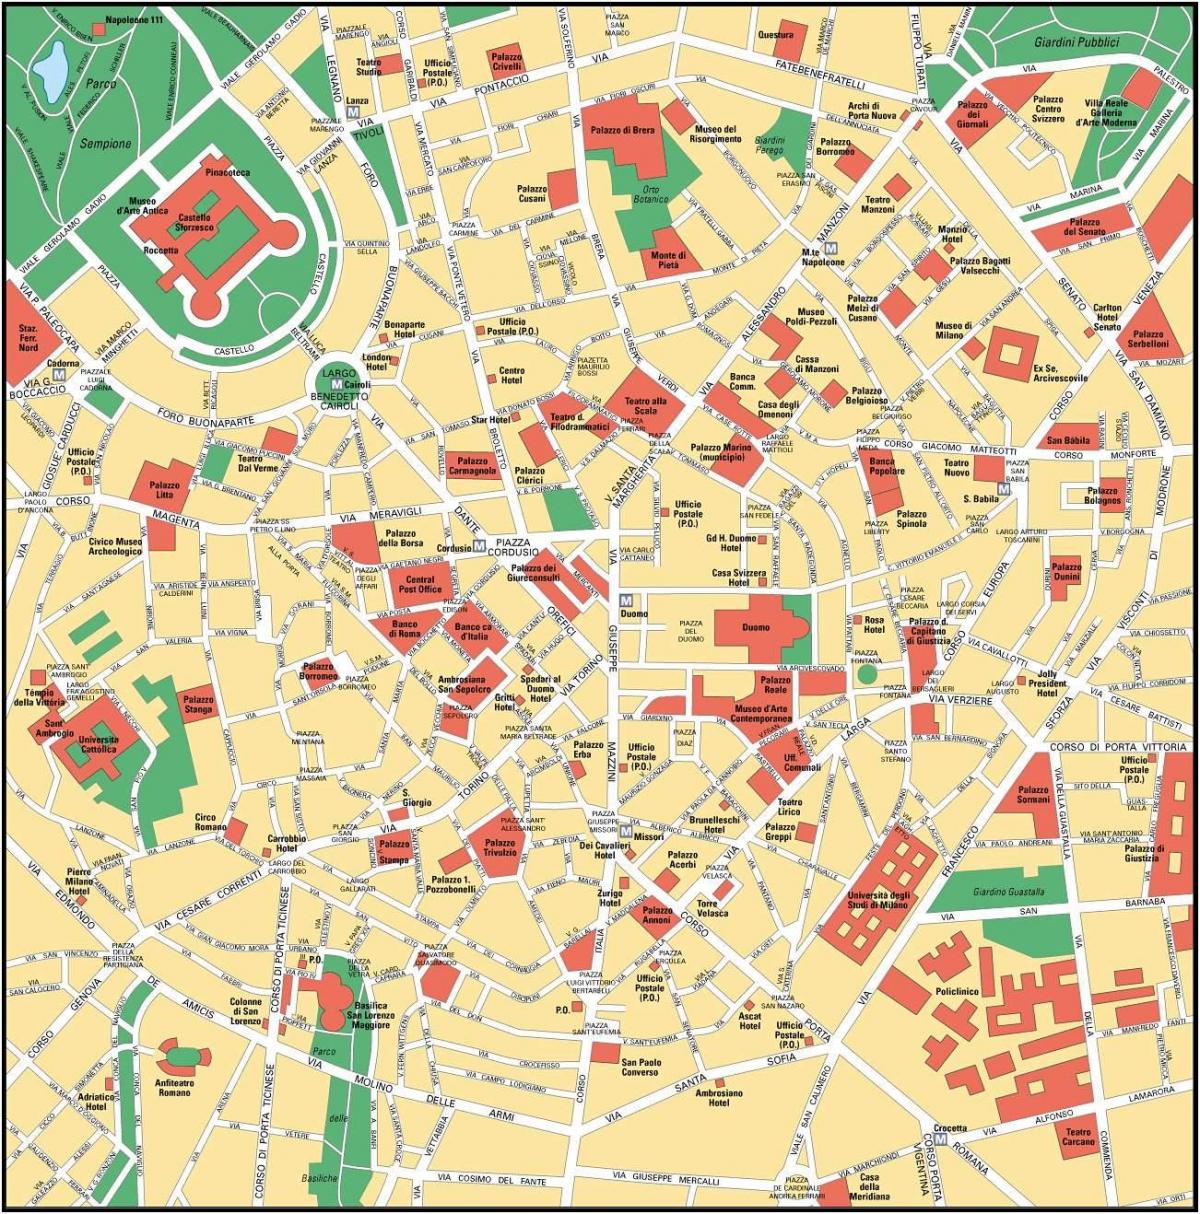 milan italy sentro ng lungsod mapa